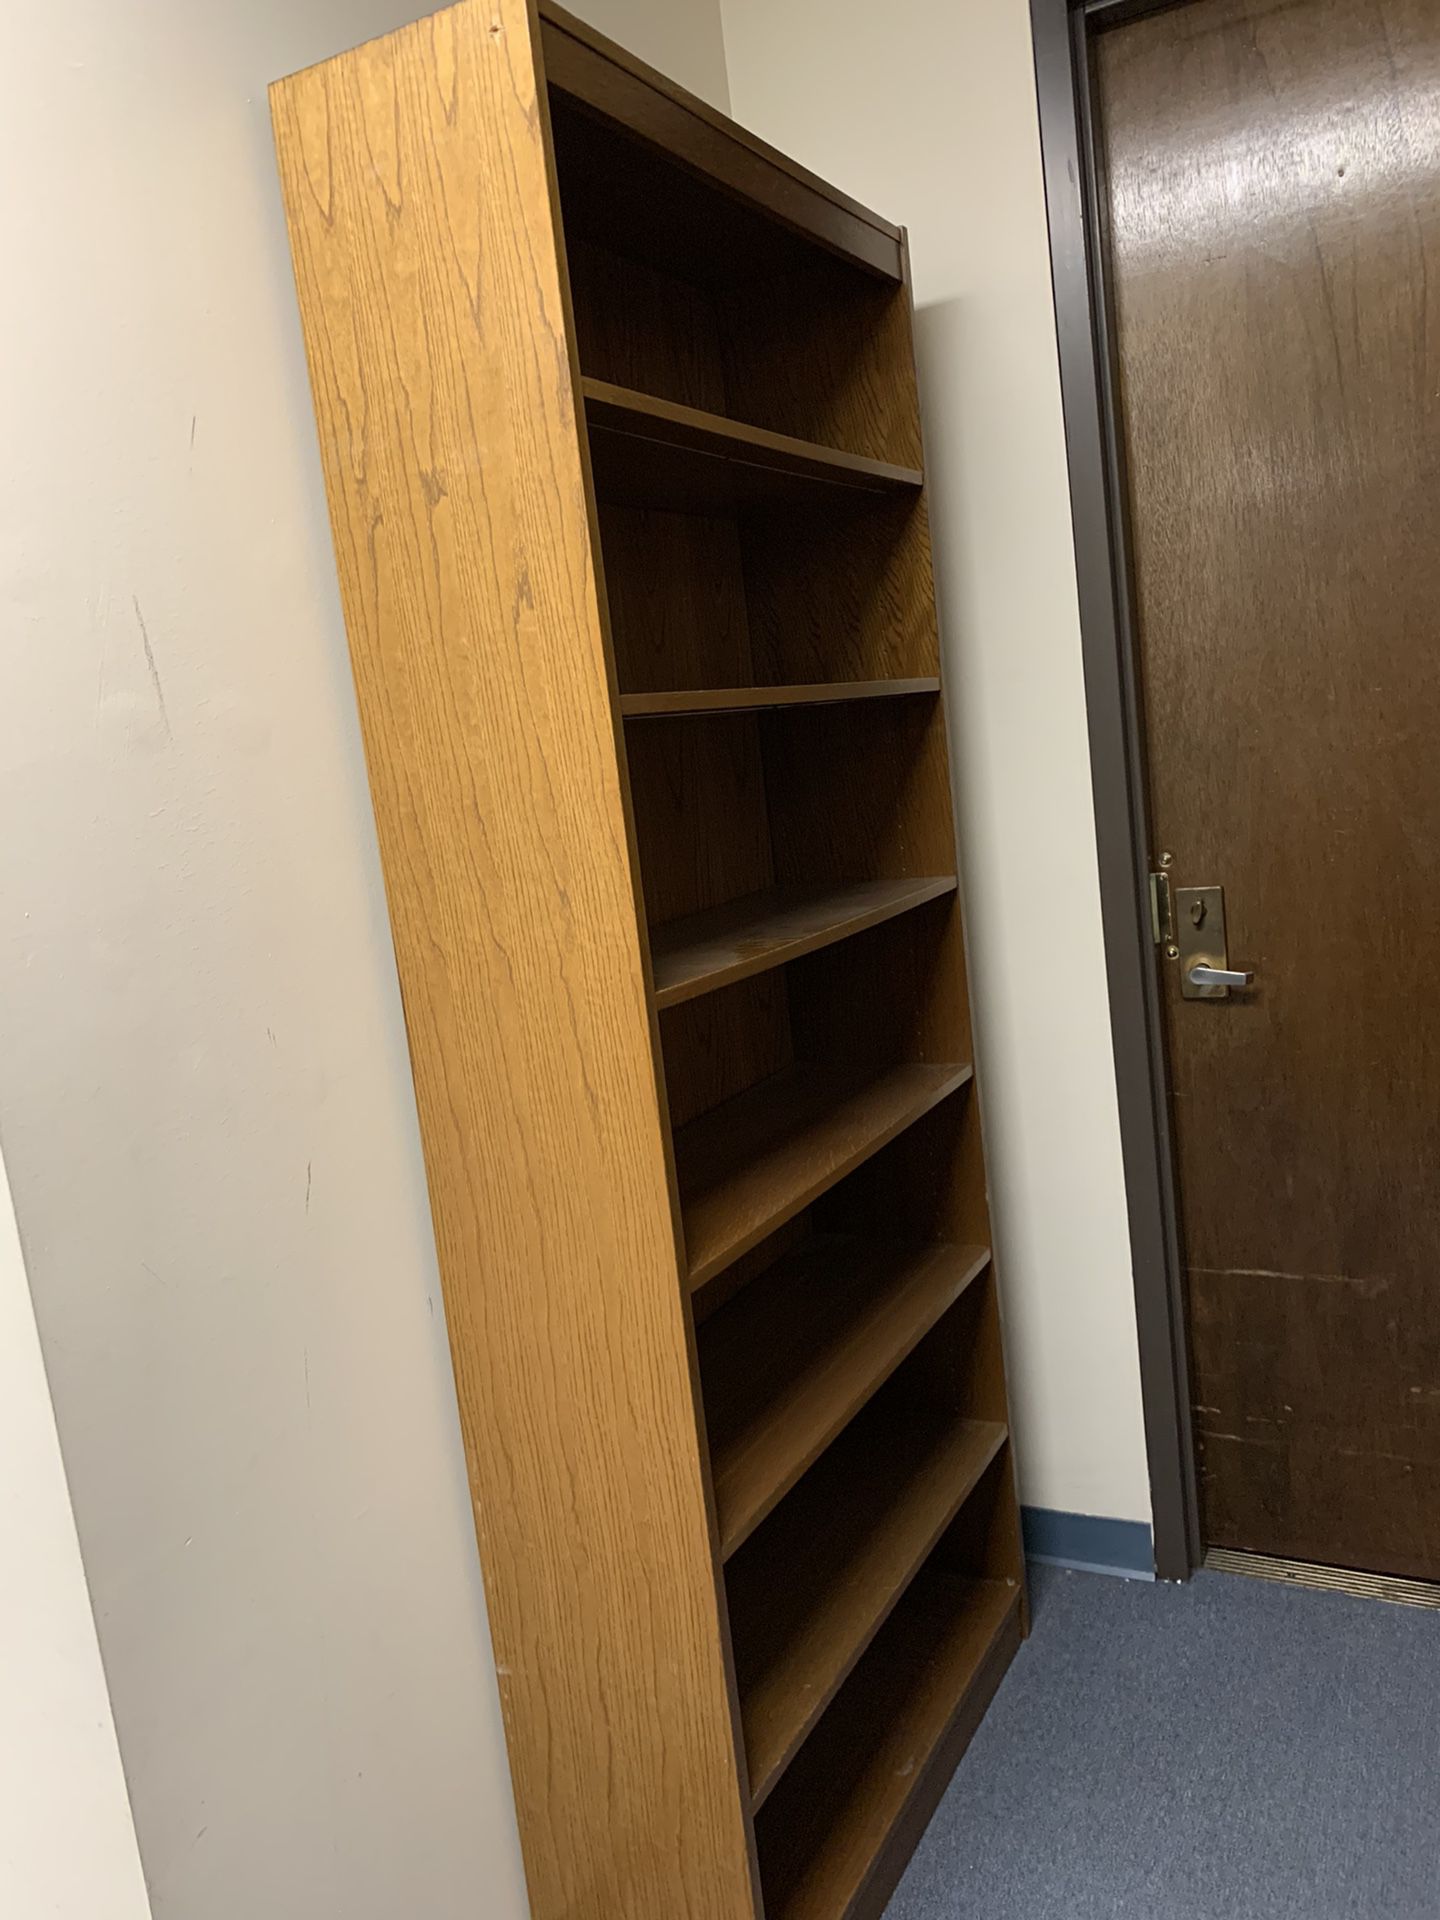 Bookshelves $50